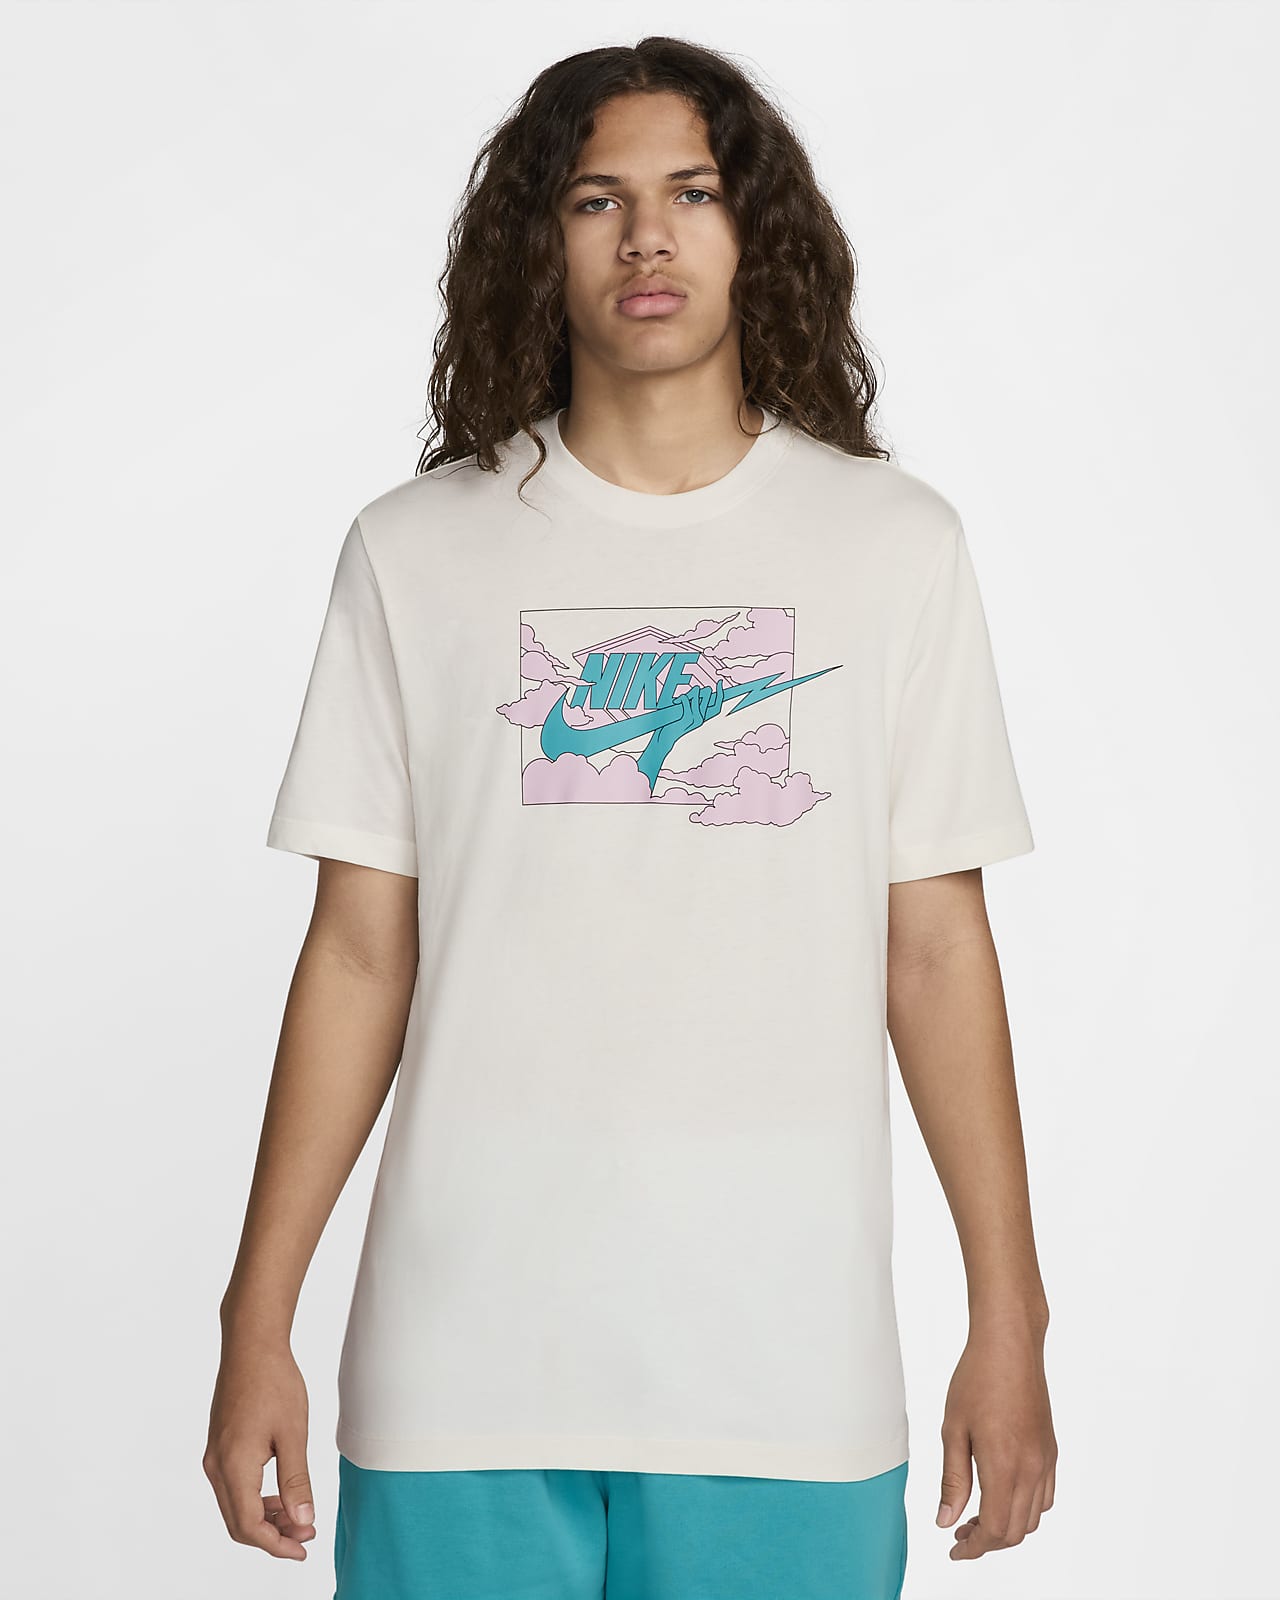 T-shirt Nike Club – Uomo